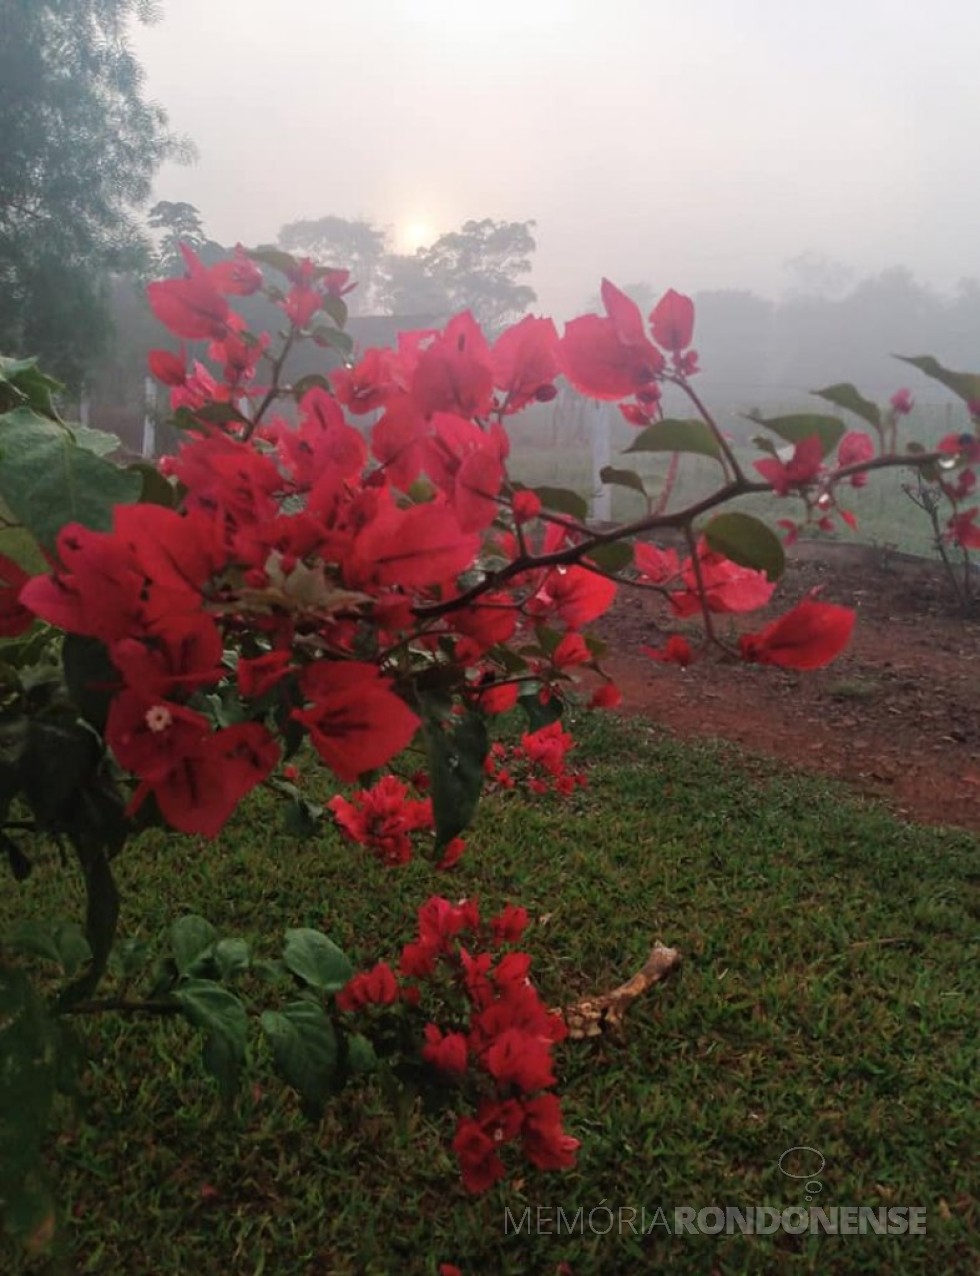 || Outro instantâneo da neblina em Marechal Cândido Rondon, no dia 16 de junho de 2021, na propriedade do casal Roselene e Semildo Laske.
Imagem: Acervo e crédito de Roselene Zimmermann Laske - FOTO 13 - 